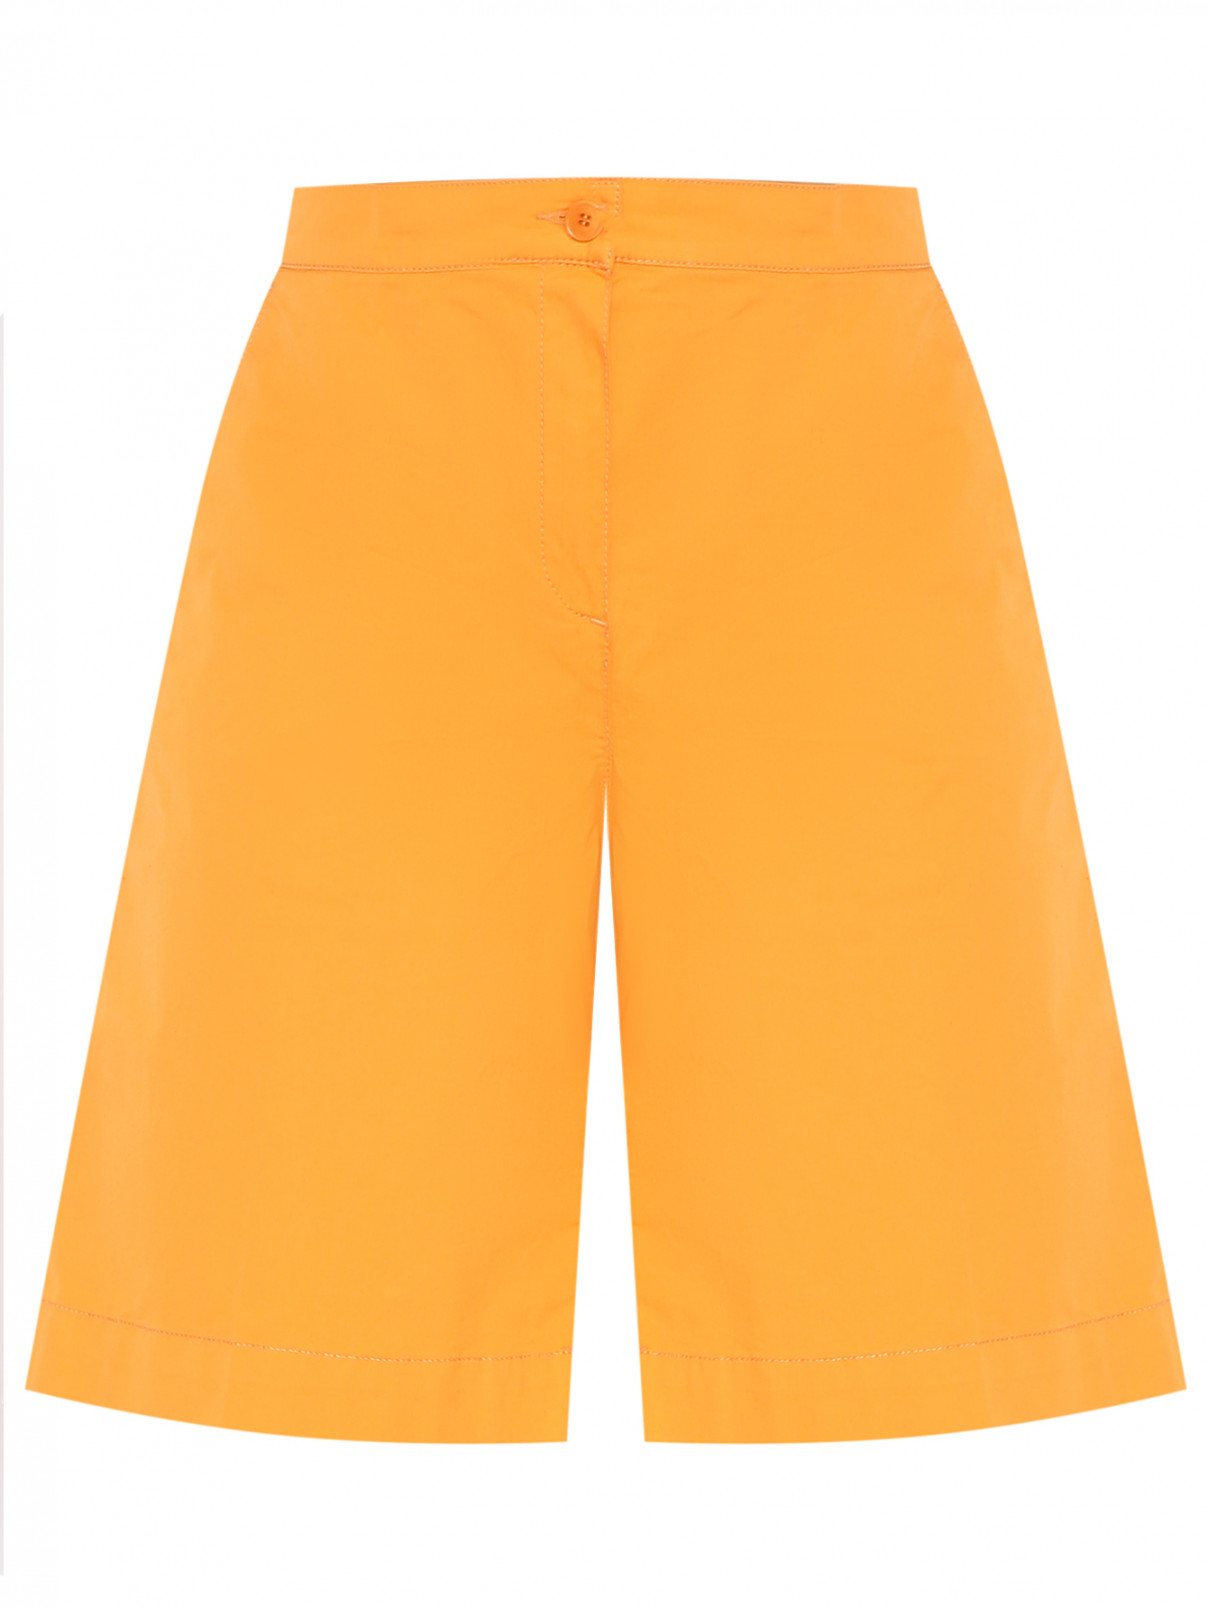 Шорты из хлопка с карманами Marina Rinaldi  –  Общий вид  – Цвет:  Оранжевый